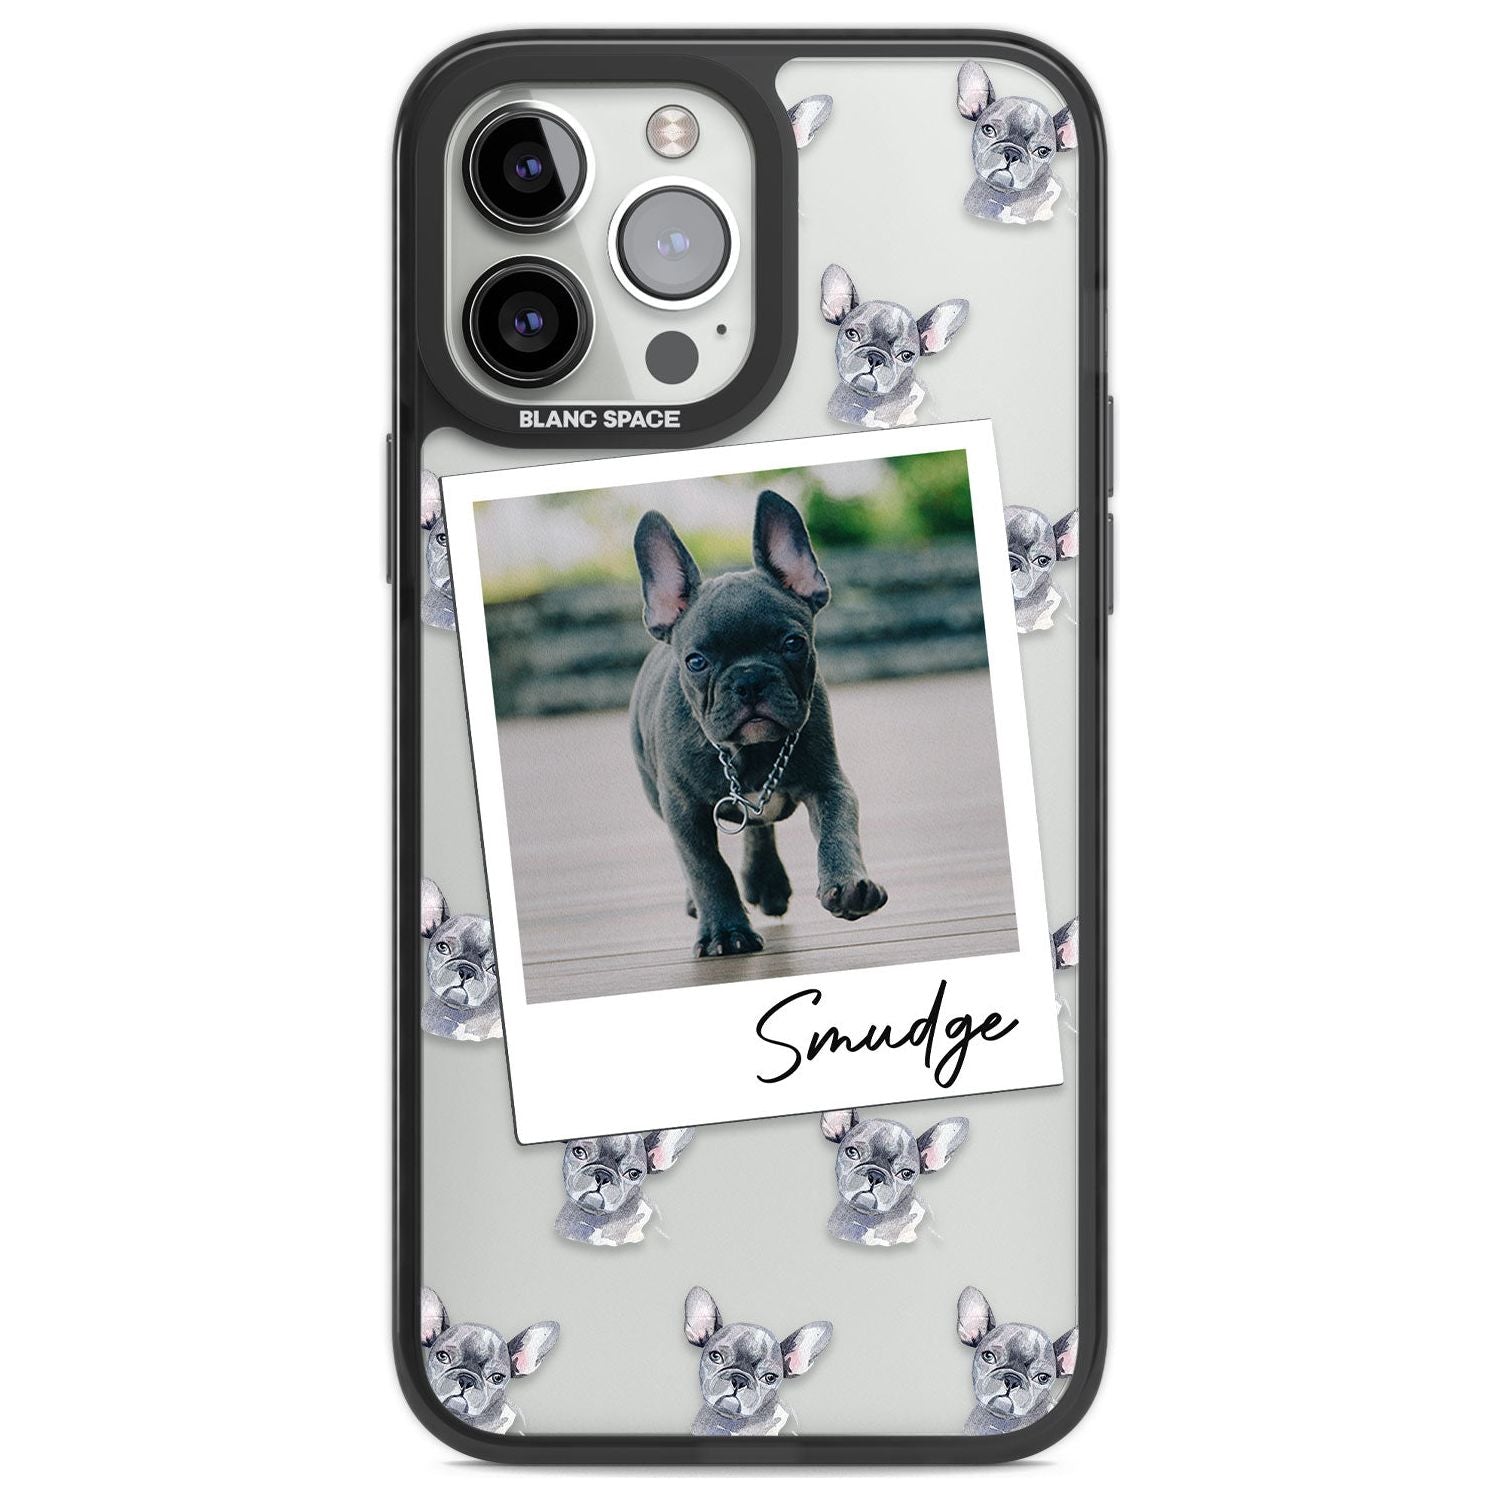 Personalised French Bulldog, Grey - Dog Photo Custom Phone Case iPhone 13 Pro Max / Black Impact Case,iPhone 14 Pro Max / Black Impact Case Blanc Space